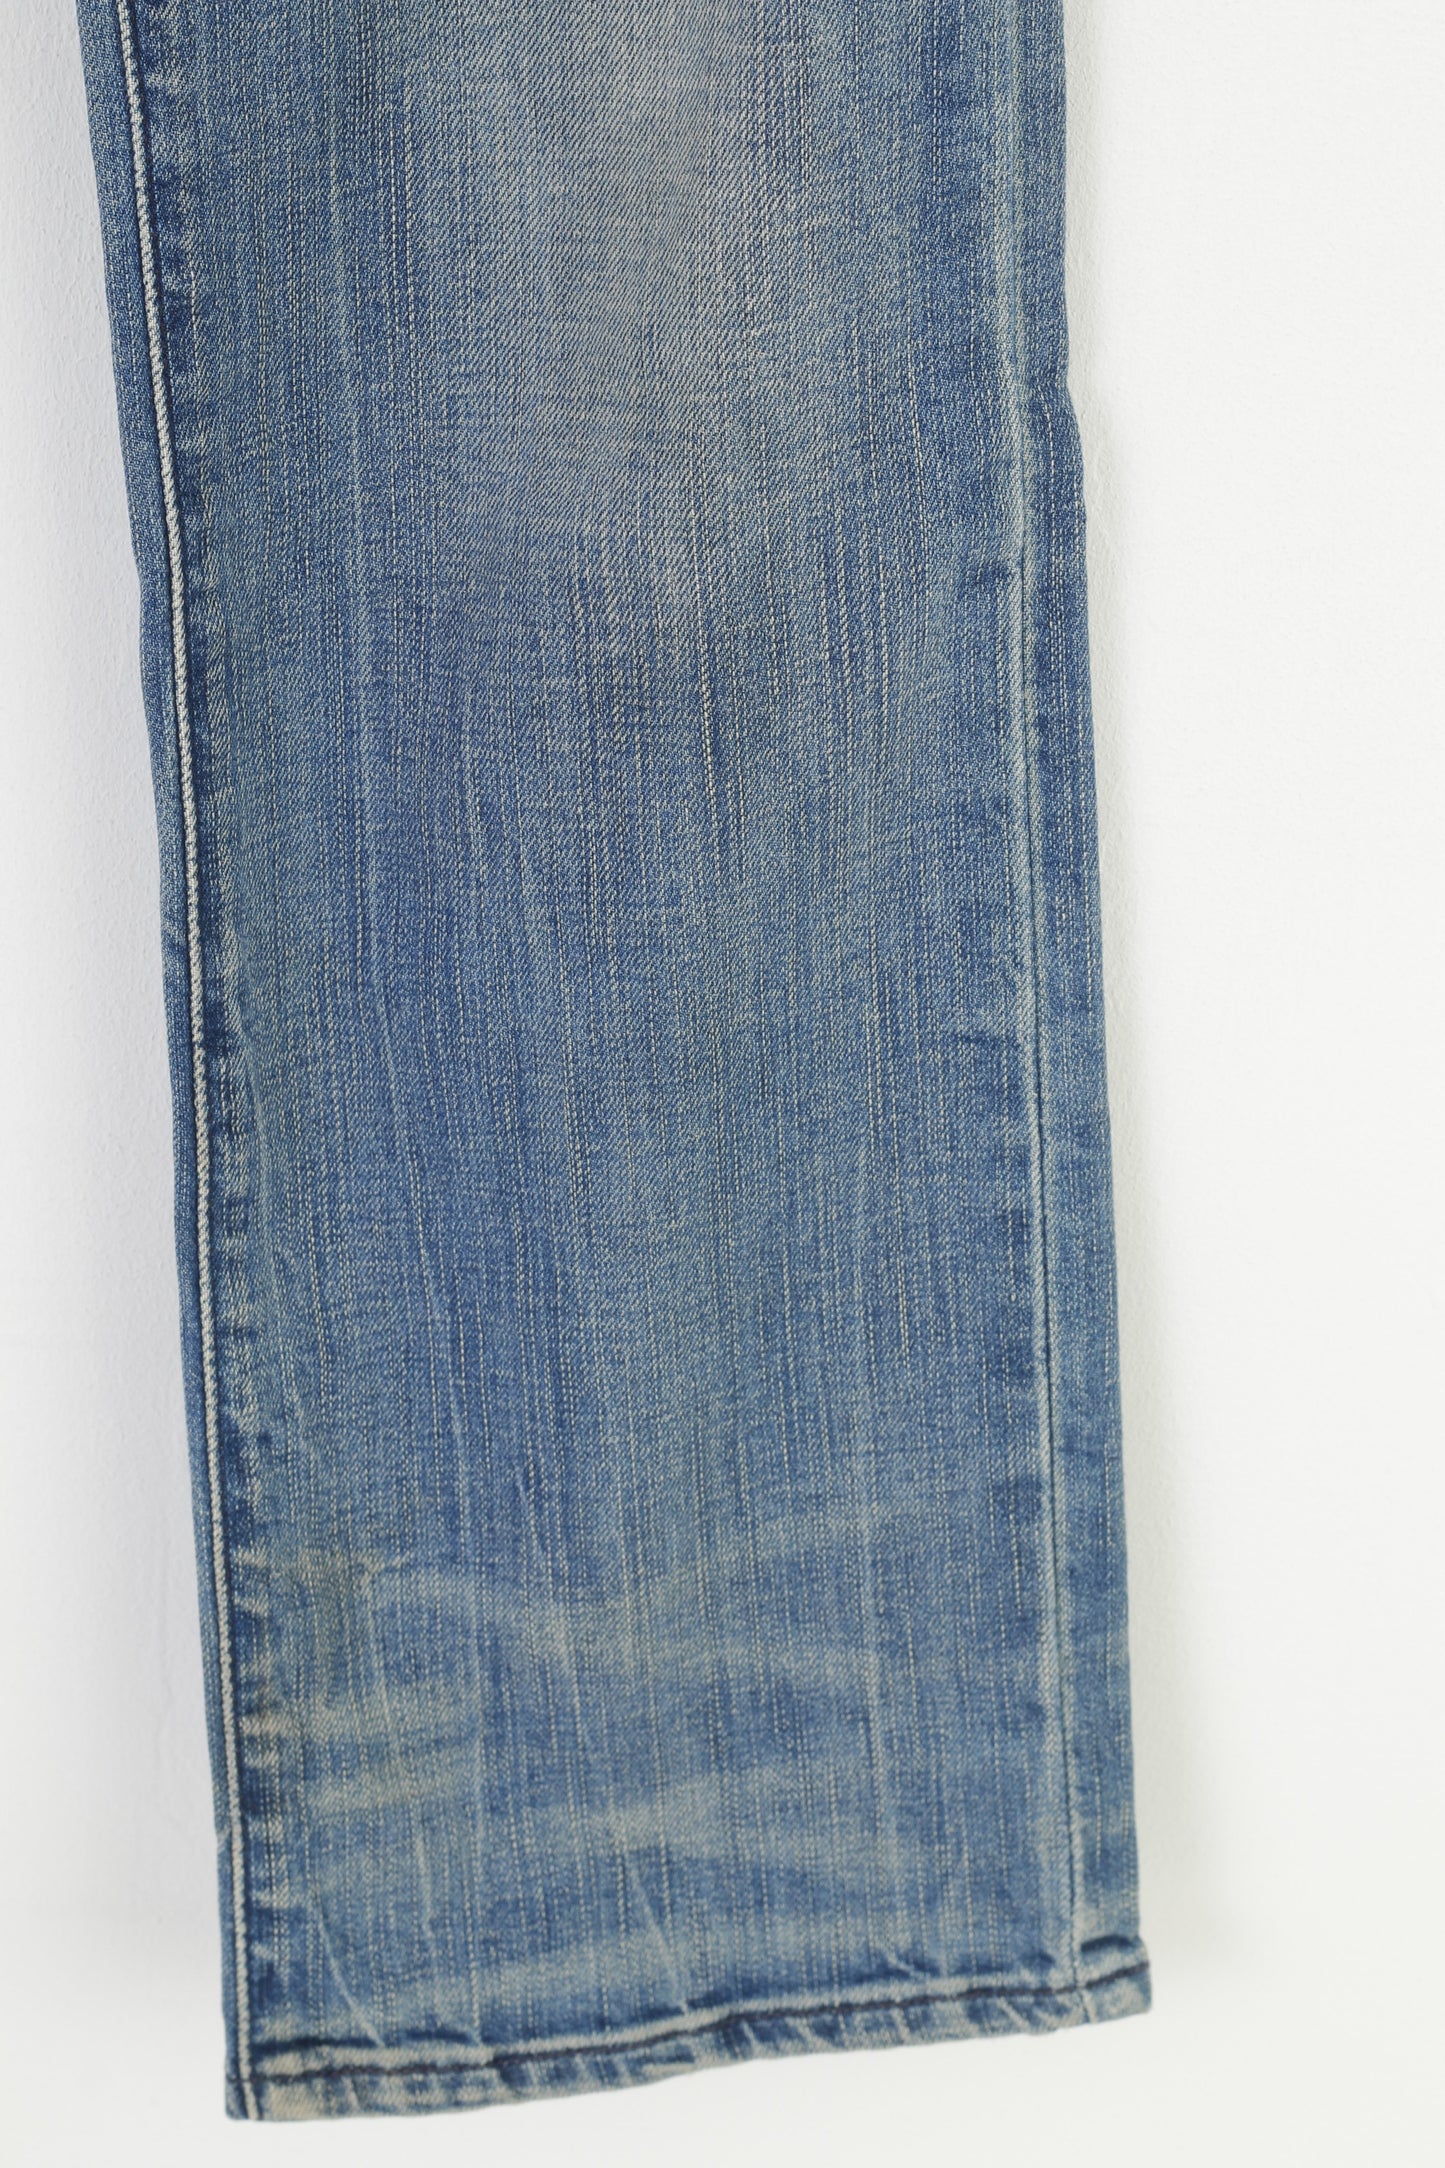 Levis – pantalon en Denim de coton bleu pour femme, pantalon droit, 27